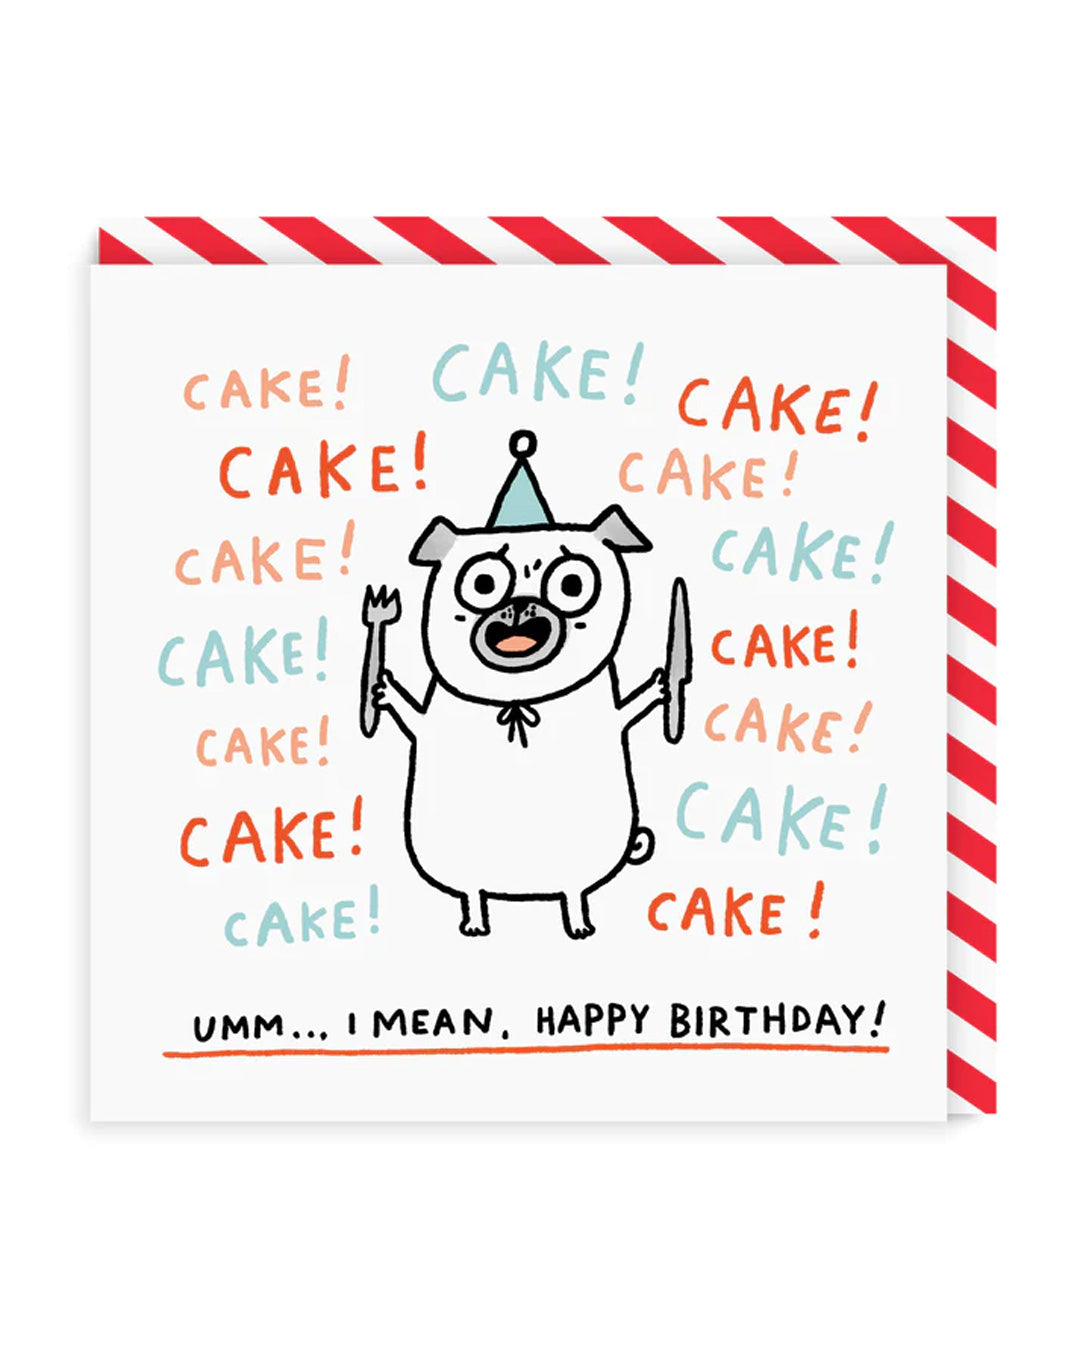 Cake! Cake! Cake! Square Birthday Card